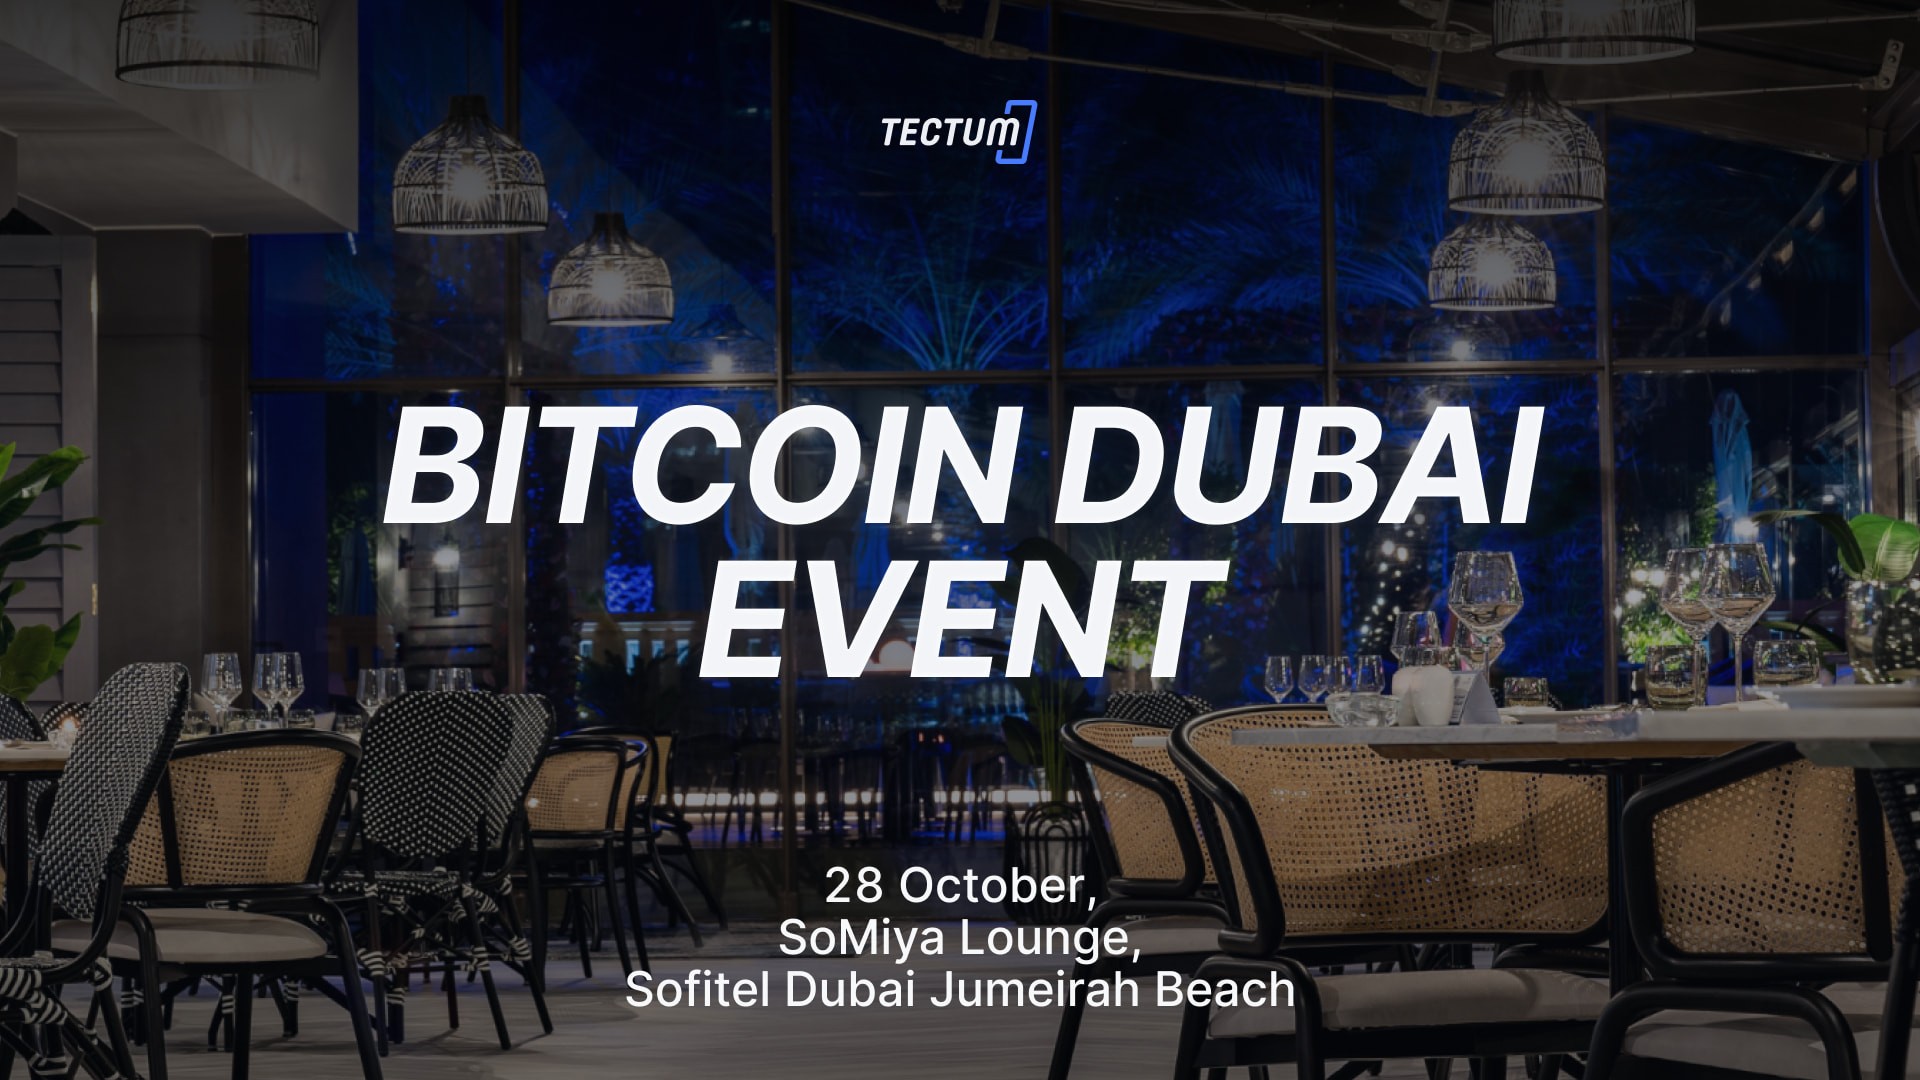 Tectum Invites Everyone to The Bitcoin Dubai Event on October 28th